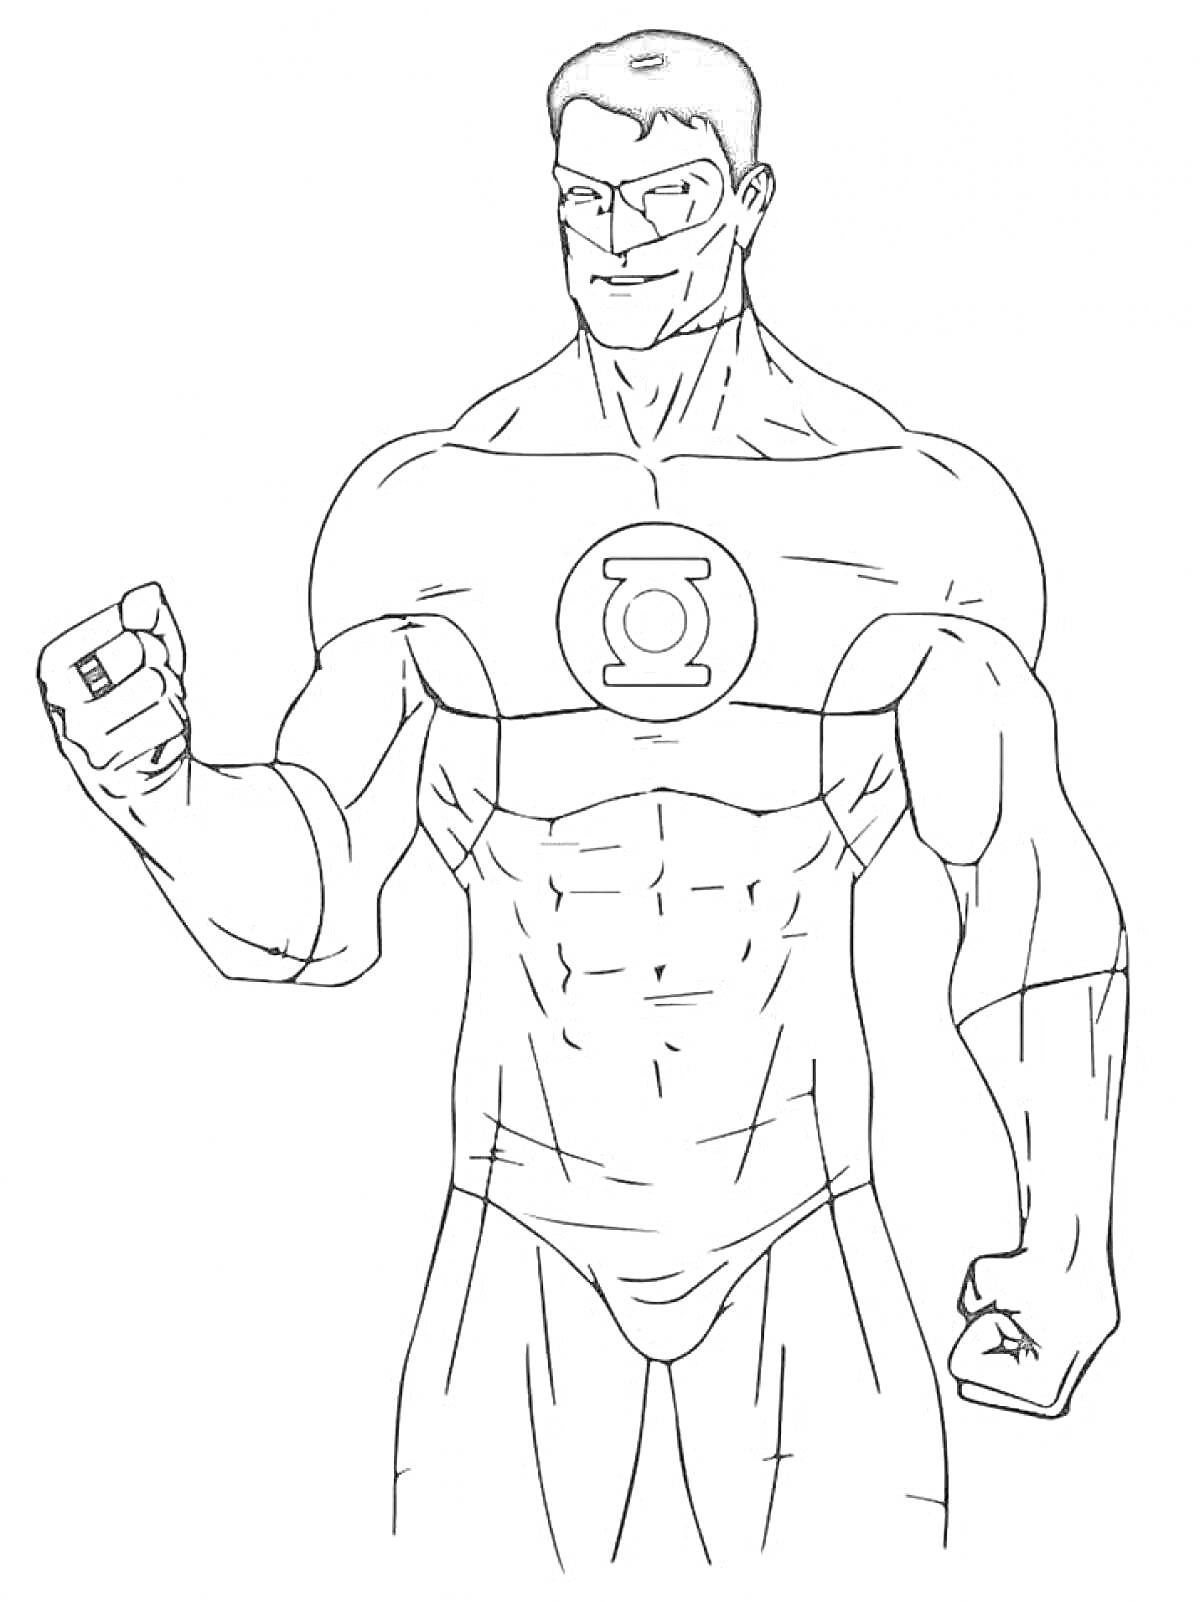 Раскраска Супергерой с кольцом, символом на груди и сжатой рукой